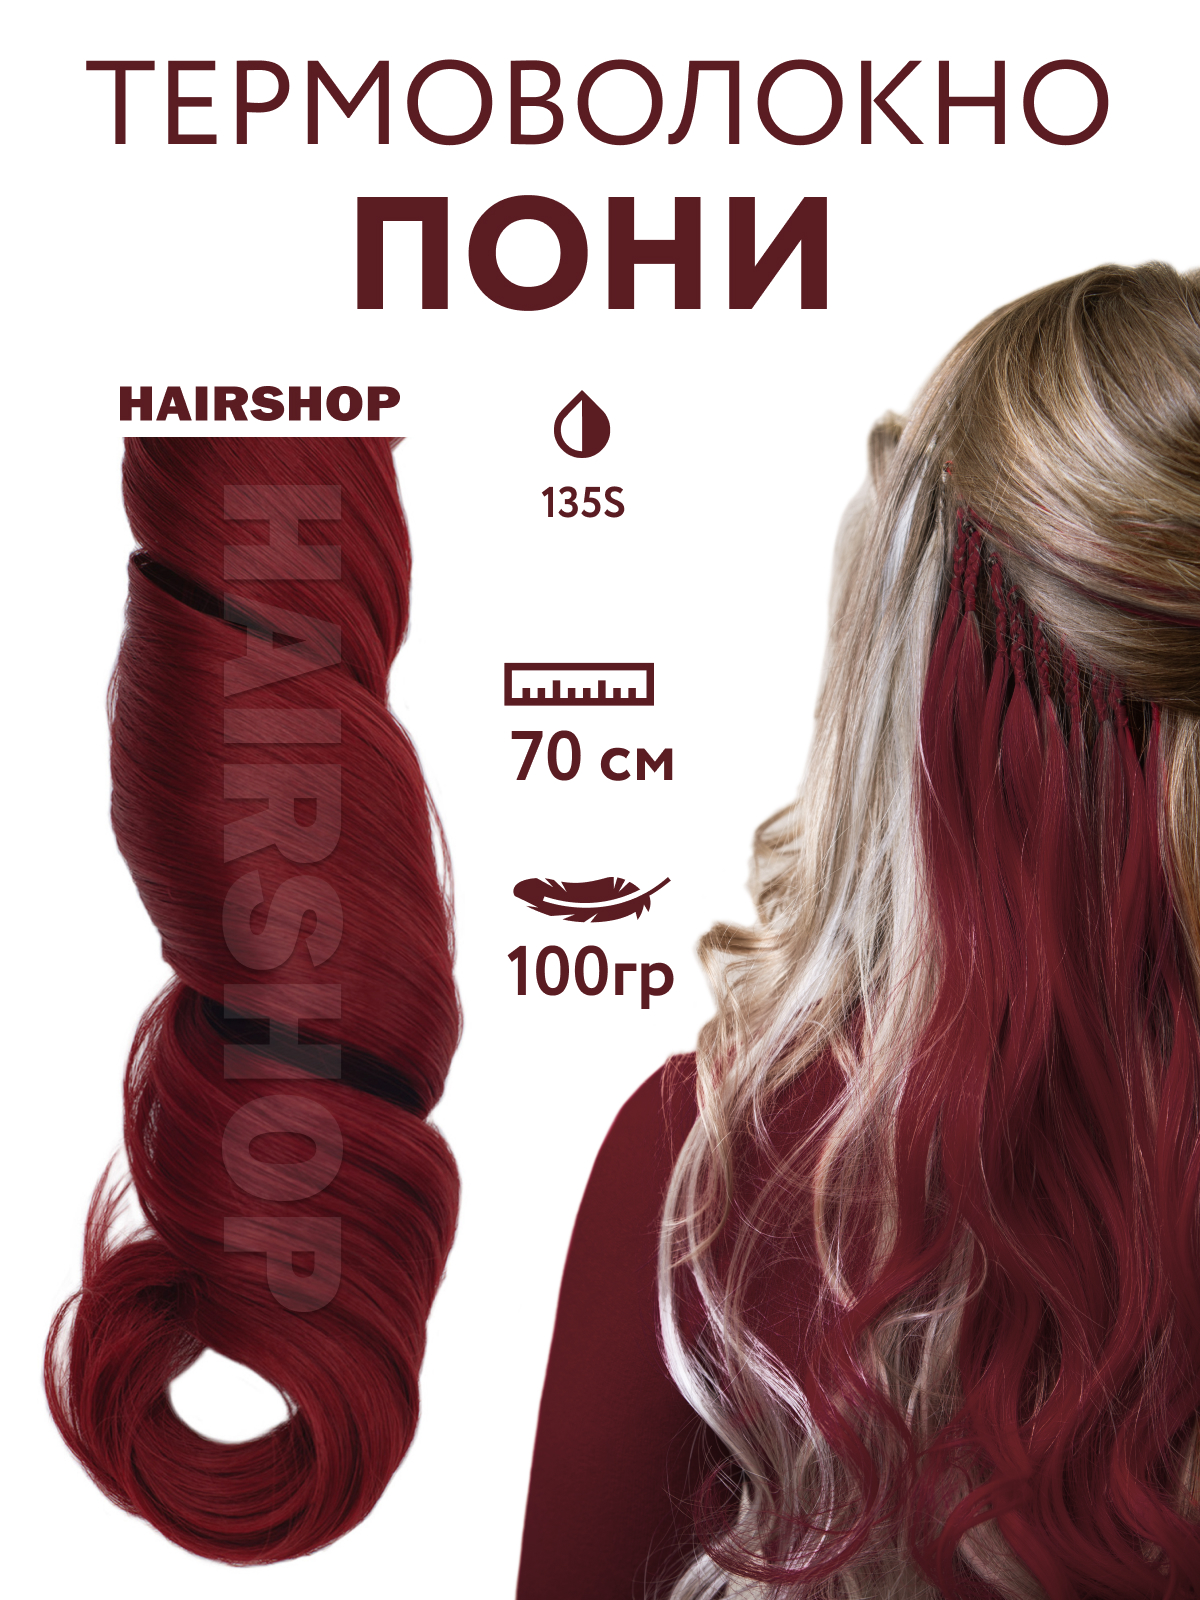 Канекалон Hairshop Пони HairUp для точечного афронаращивания 135-1 Красно-коричневый 1,4м ваза гранд 26 см красно бело марганцевая